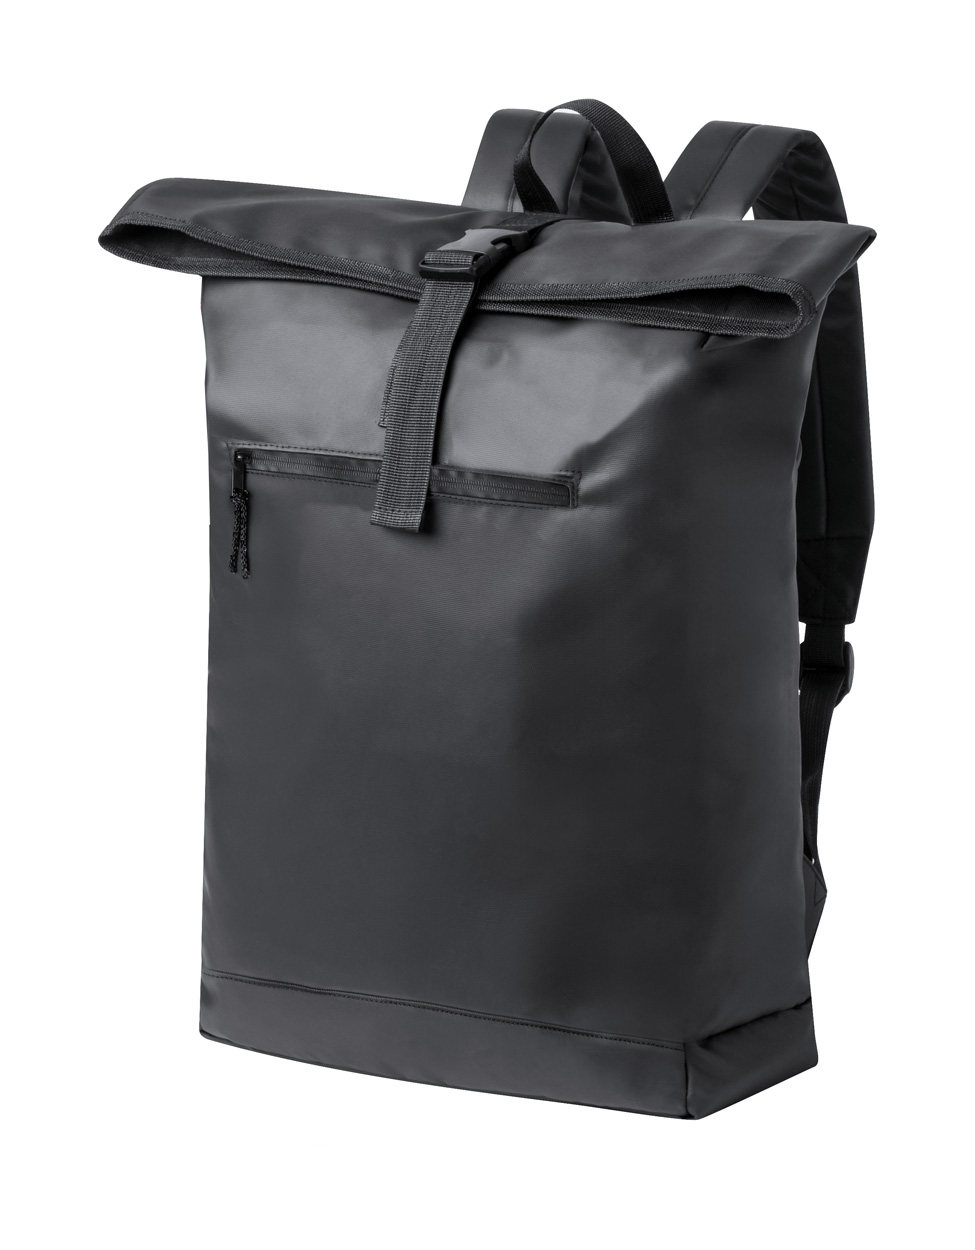 Lucenik backpack - black